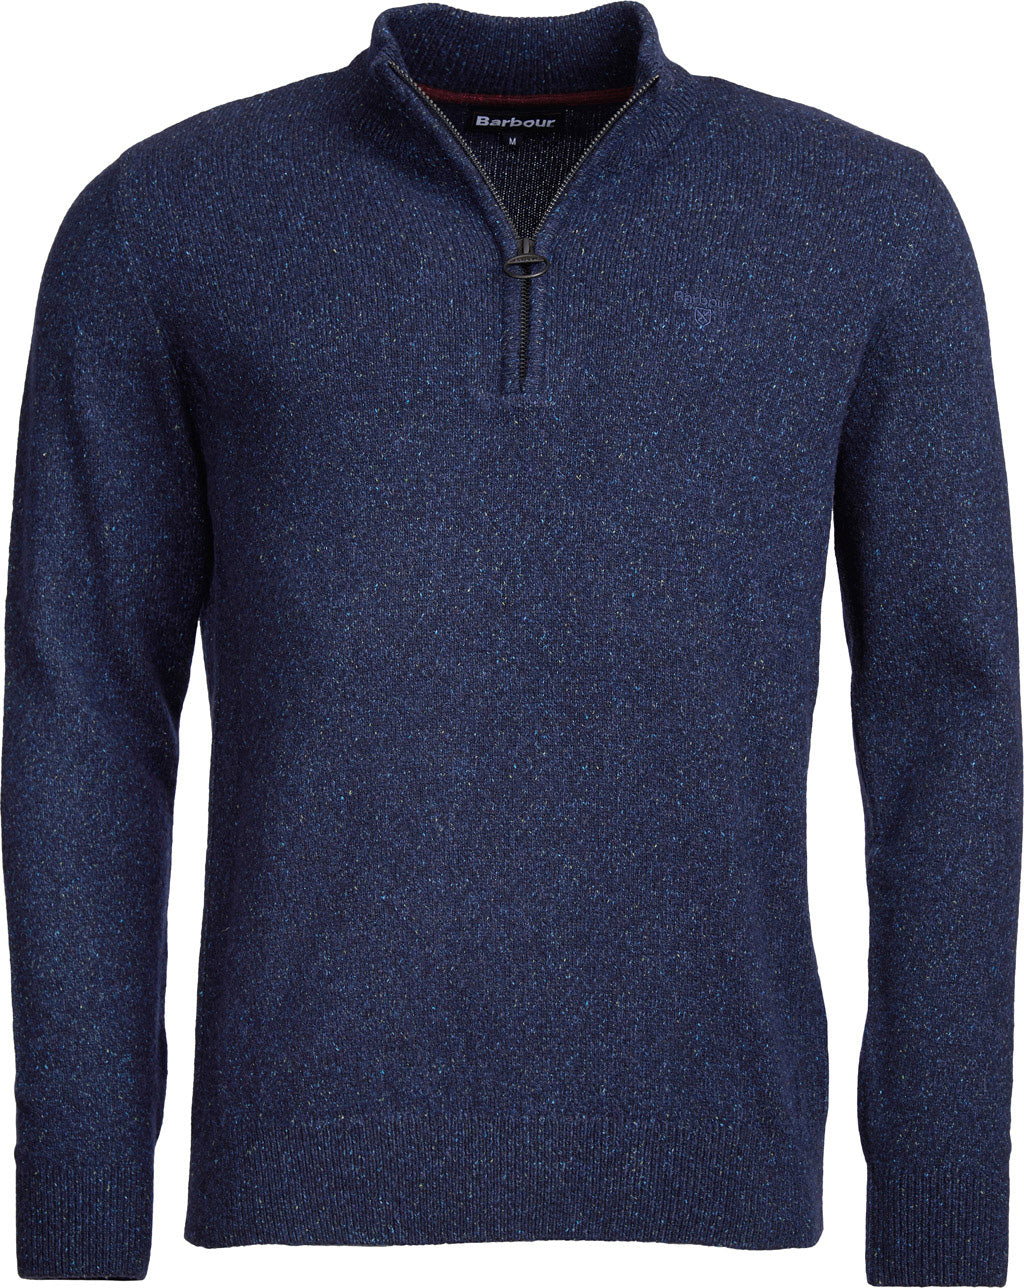 Barbour Tisbury Half Zip Sweater - Men's | Altitude Sports